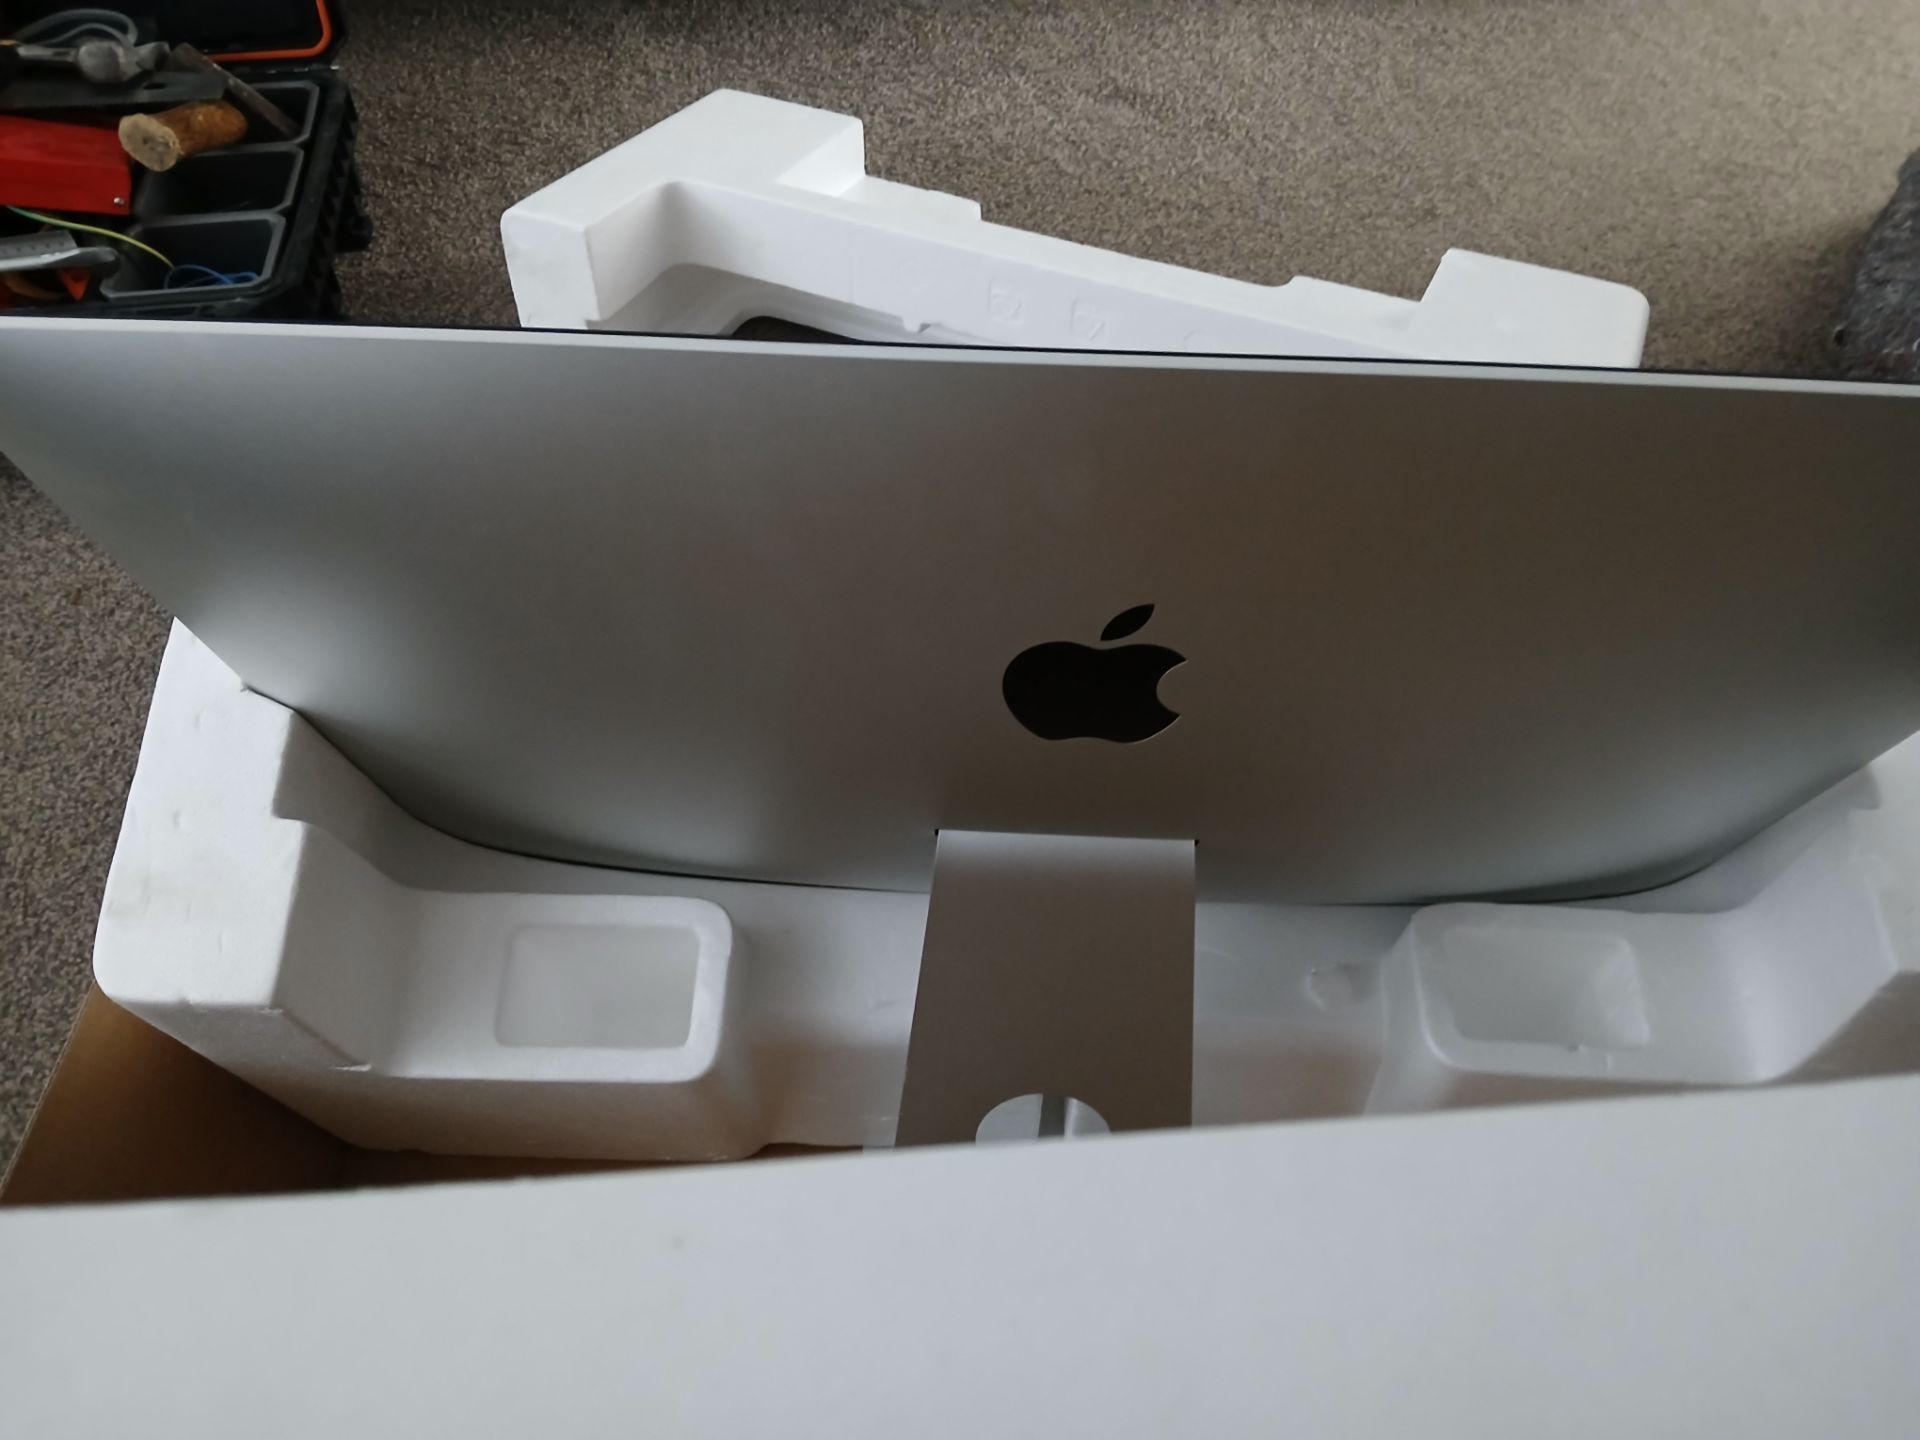 Apple iMac (Retina 5K, 27”, 2019), Serial Number DGK2HE9JV3Y (iMac only, no mouse, keyboard, or - Bild 14 aus 14